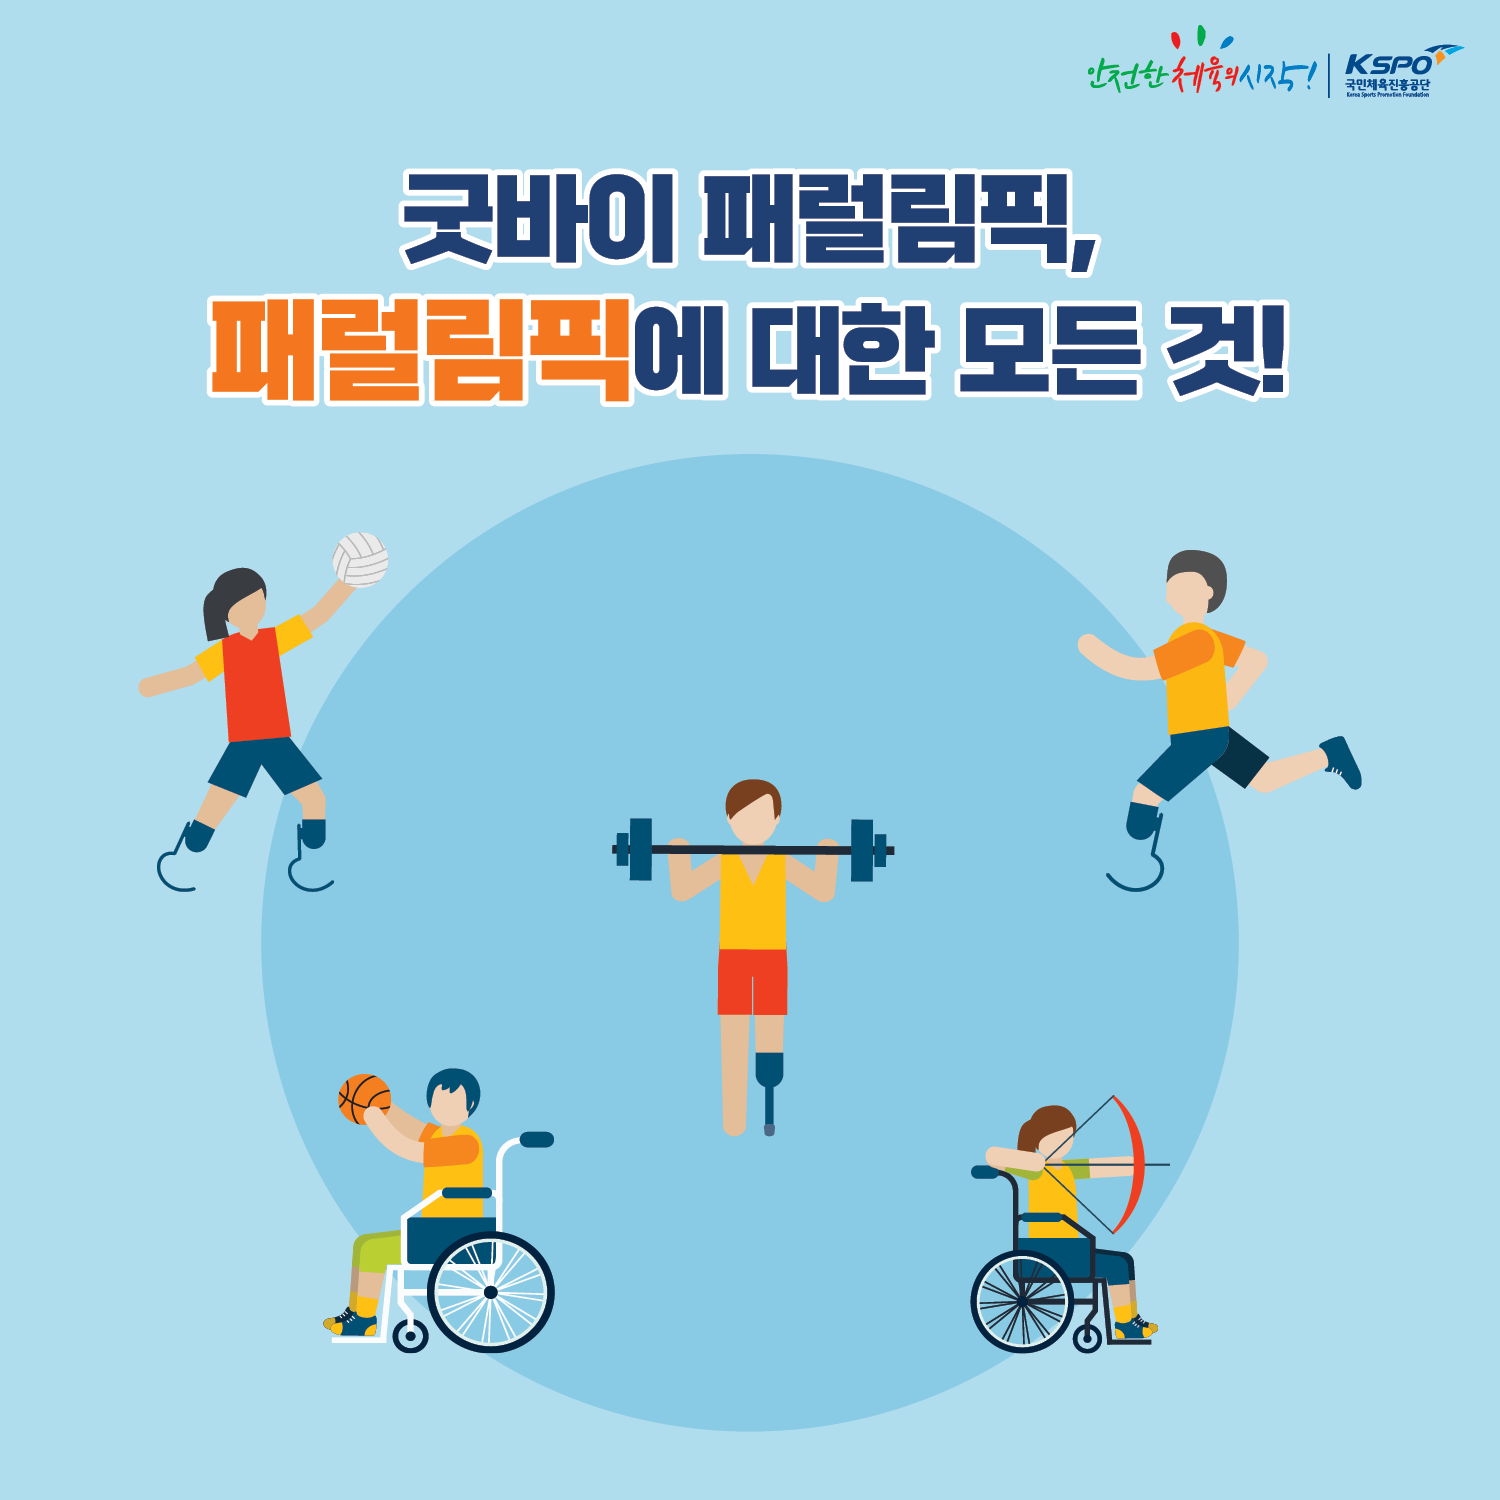 안전한체육의시작!로고, 국민체육진흥공단 로고, 굿바이 패럴림픽! 패럴림픽에 대한 모든 것!